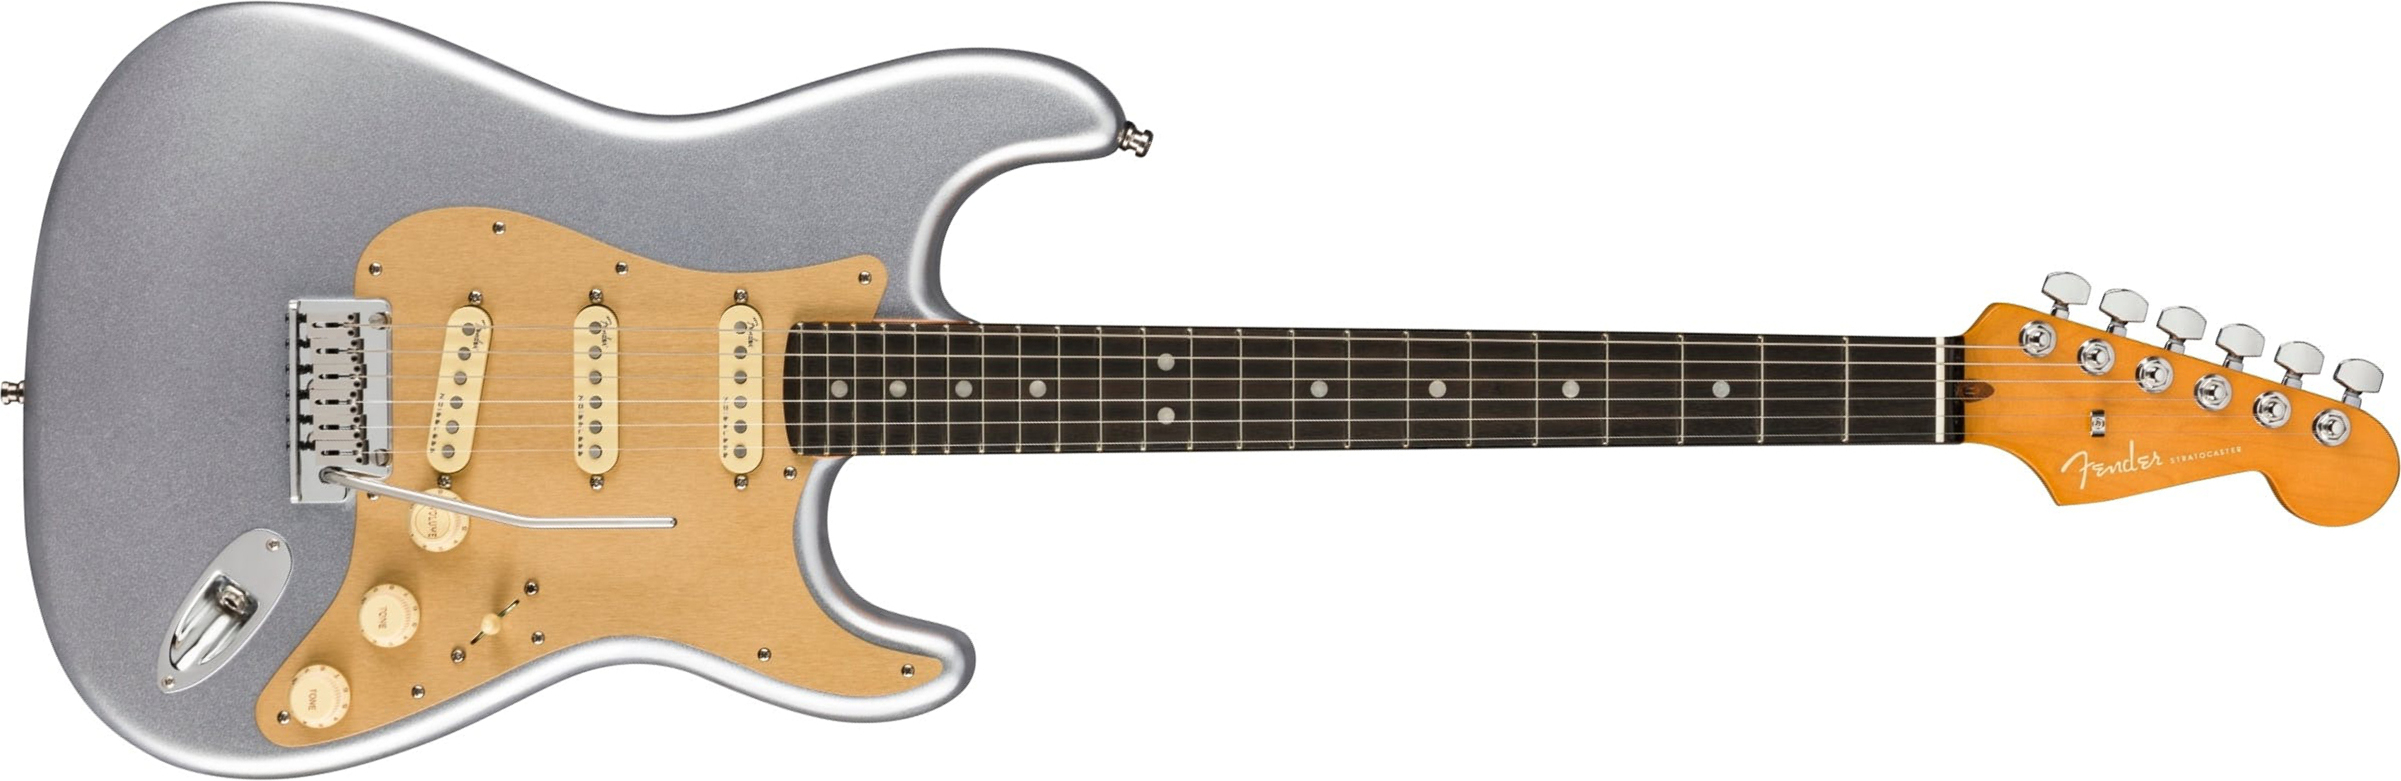 Fender Strat American Ultra Ltd Usa 3s Trem Eb - Quicksilver - E-Gitarre in Str-Form - Main picture